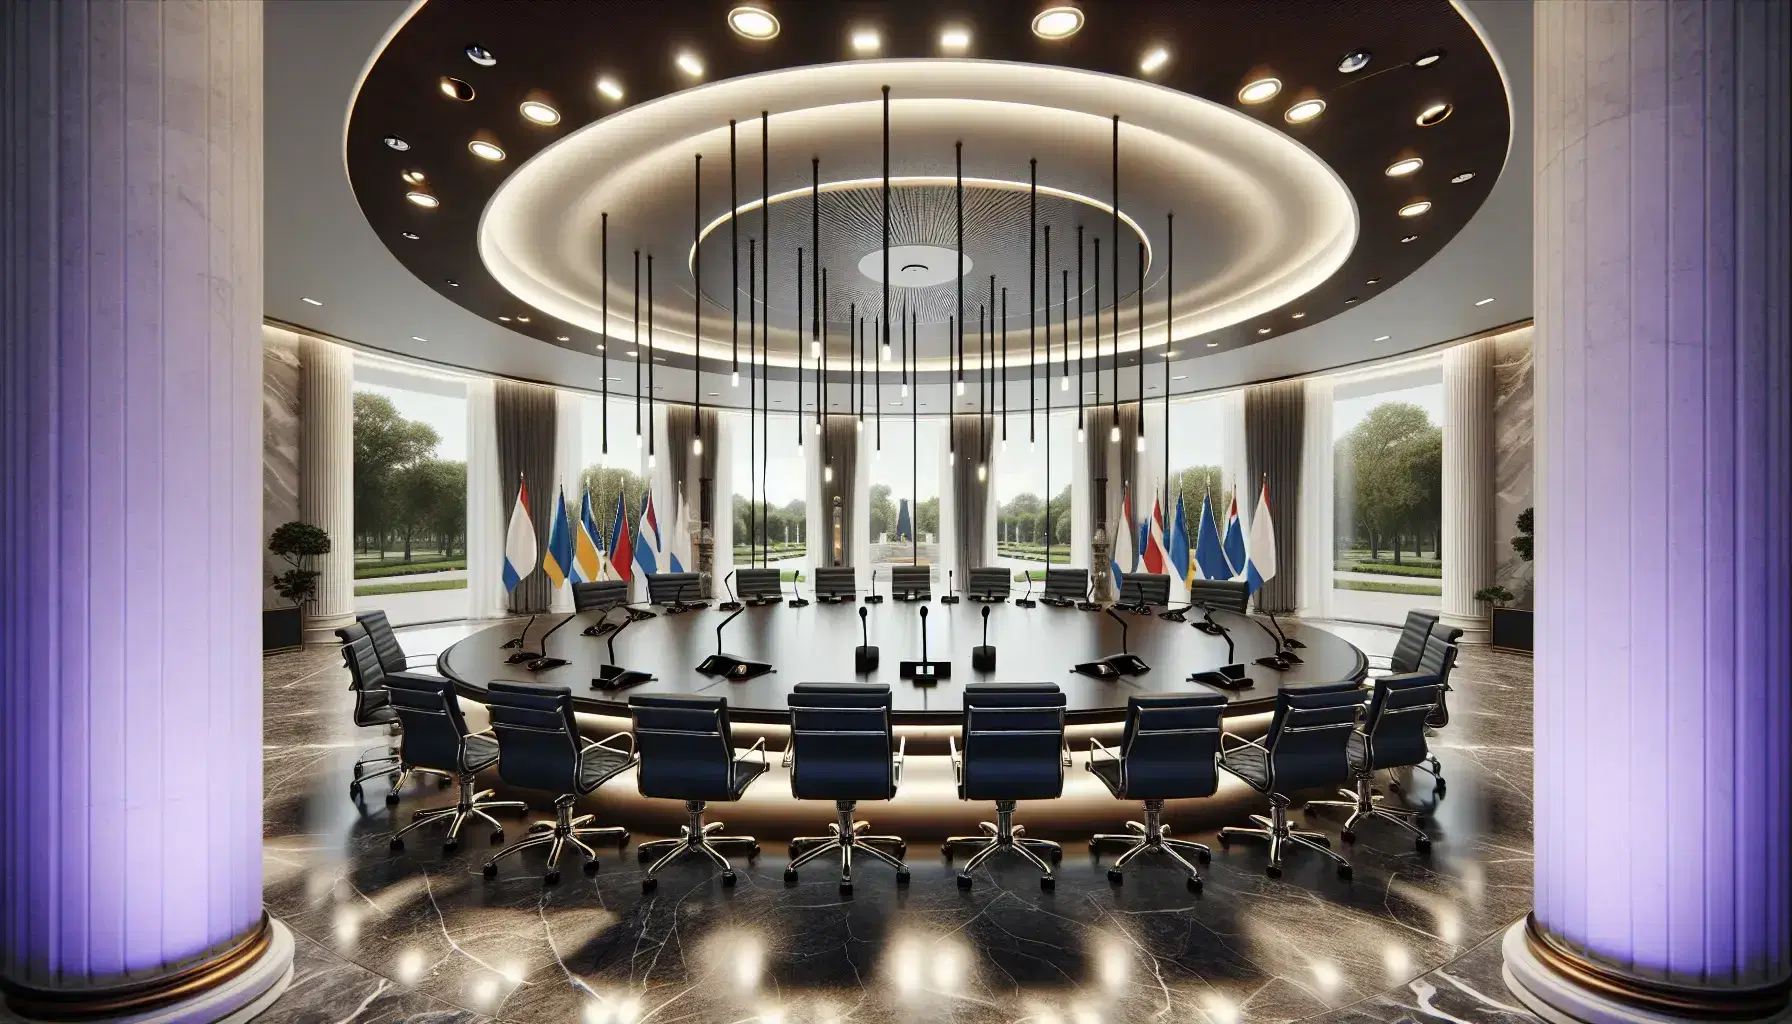 Sala de reuniones elegante con paredes de mármol blanco, mesa ovalada de madera oscura, sillas con tapizado azul y micrófonos, iluminada por luces empotradas y ventanales con vista a jardines.